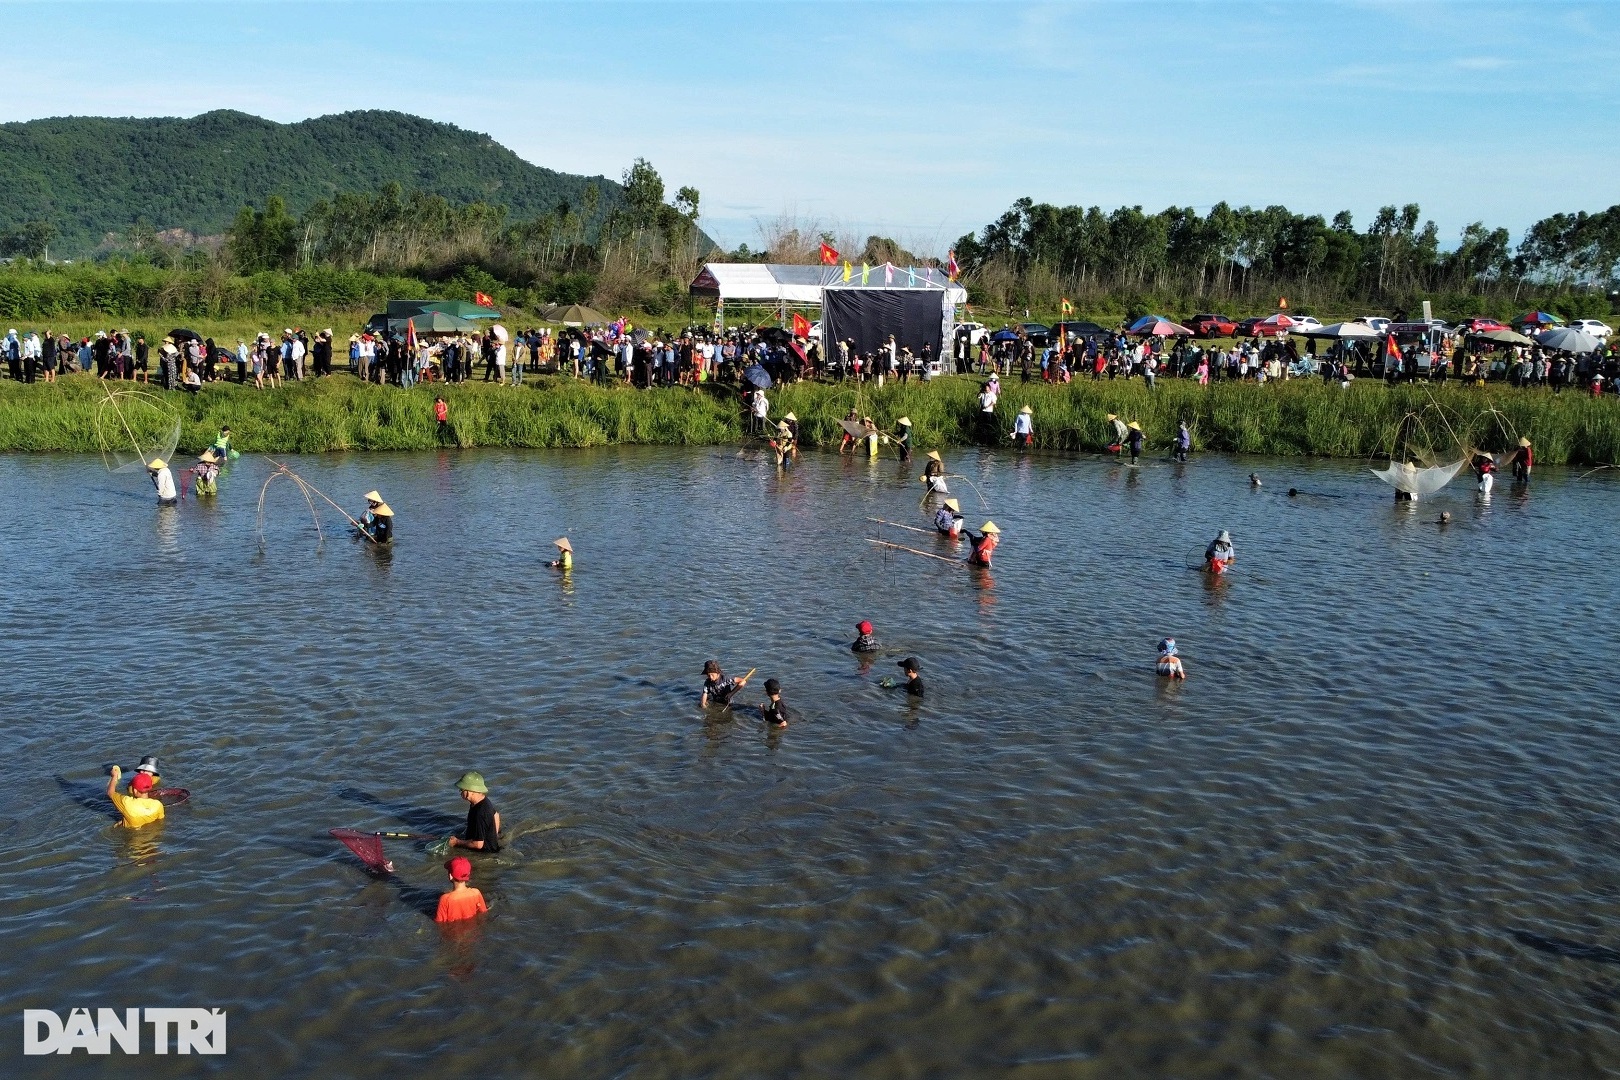 Hàng trăm người hò reo đánh bắt cá tại lễ hội hơn 300 năm tuổi - 11